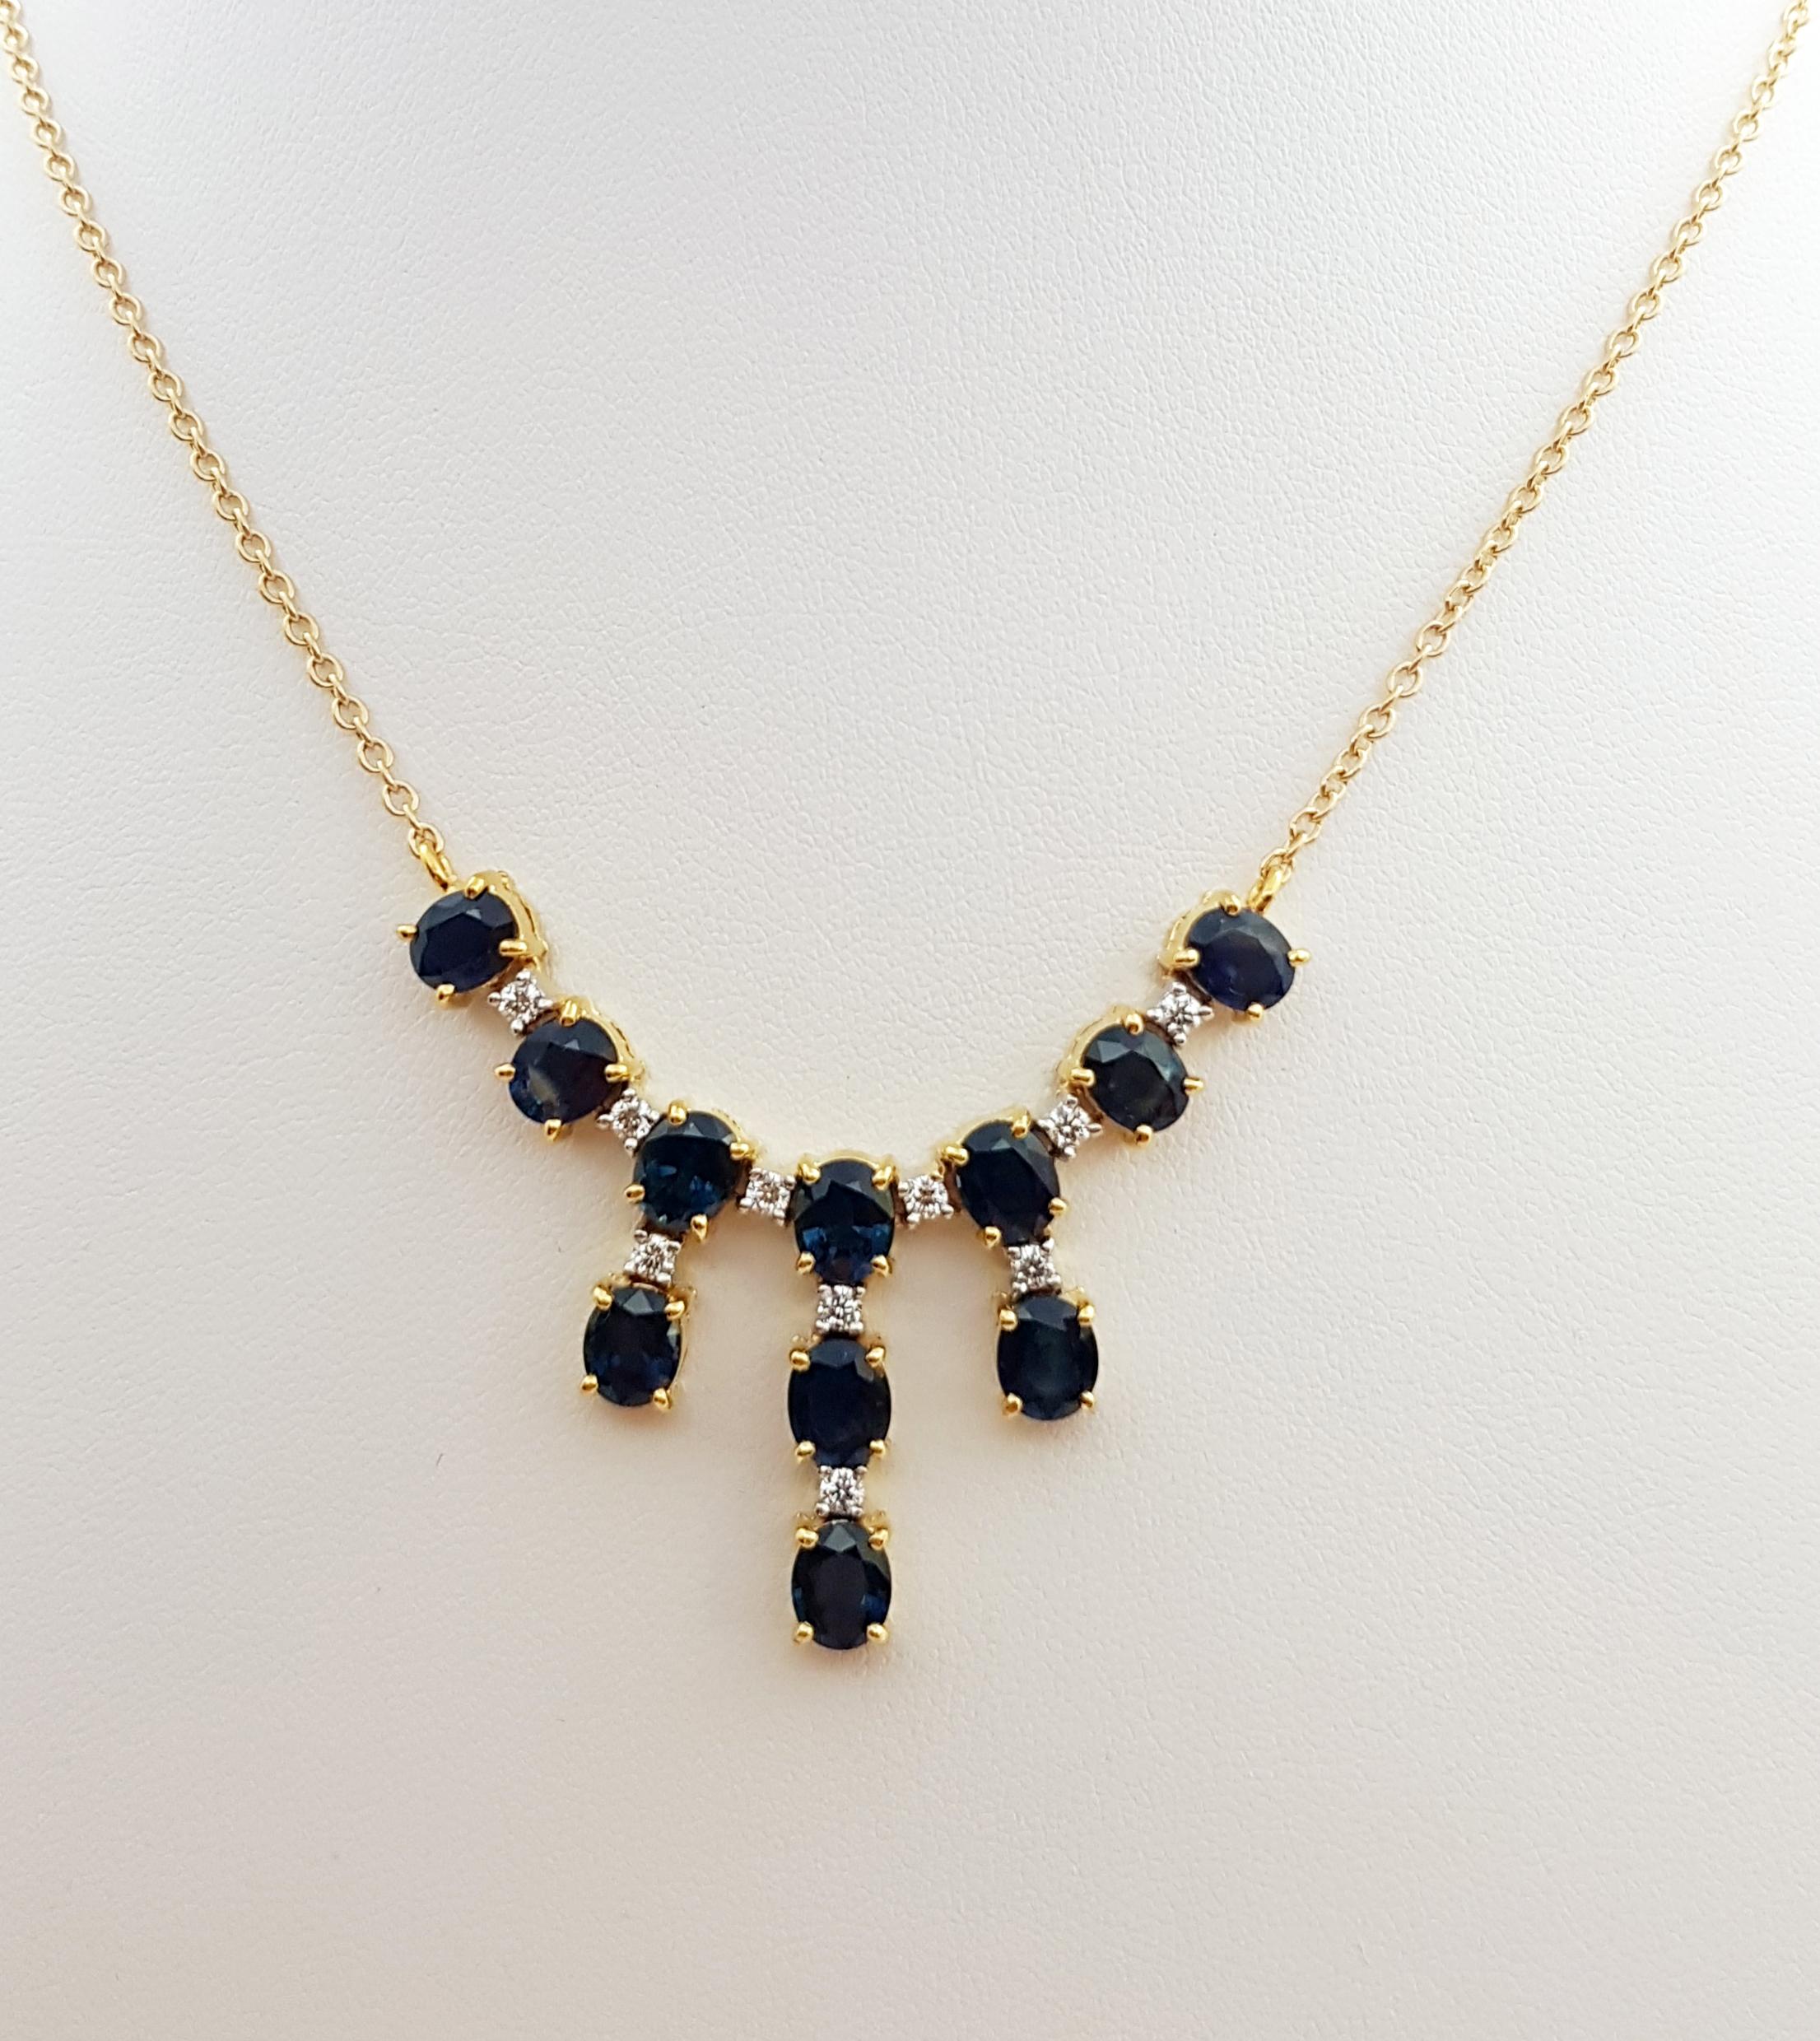 Blauer Saphir 8,99 Karat mit Diamant 0,40 Karat Halskette in 18 Karat Goldfassung 

Breite: 2,5 cm 
Länge: 44,0 cm
Gesamtgewicht: 14,16 Gramm

